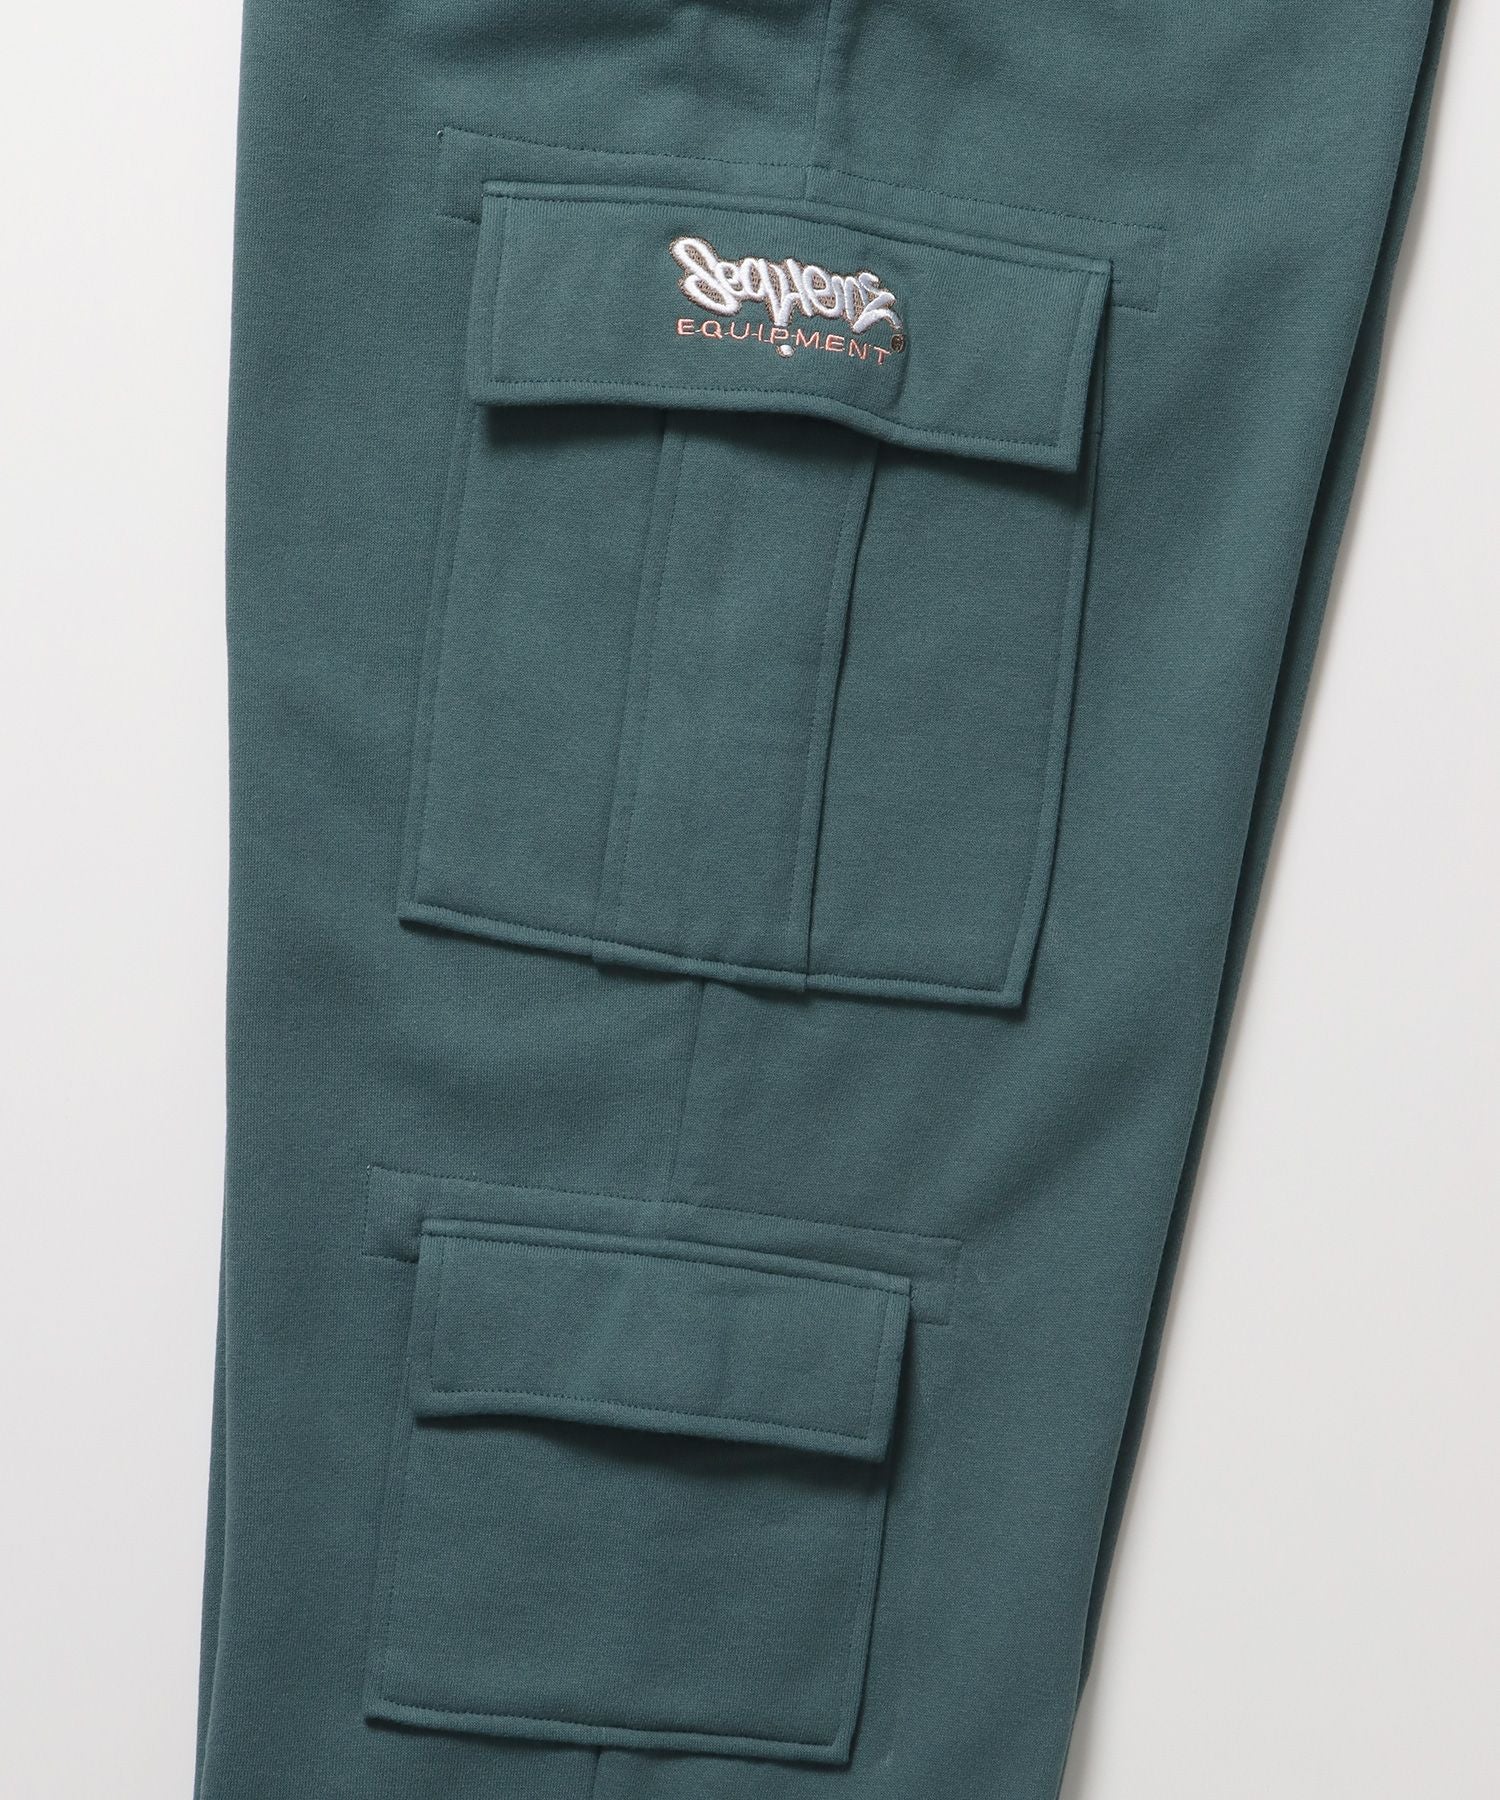 90s UTILITY CARGO SWEAT PANTS / ロゴ 刺繍 カーゴ ポケット スウェット パンツ ドローコード ワイドシルエット セットアップ オリーブ